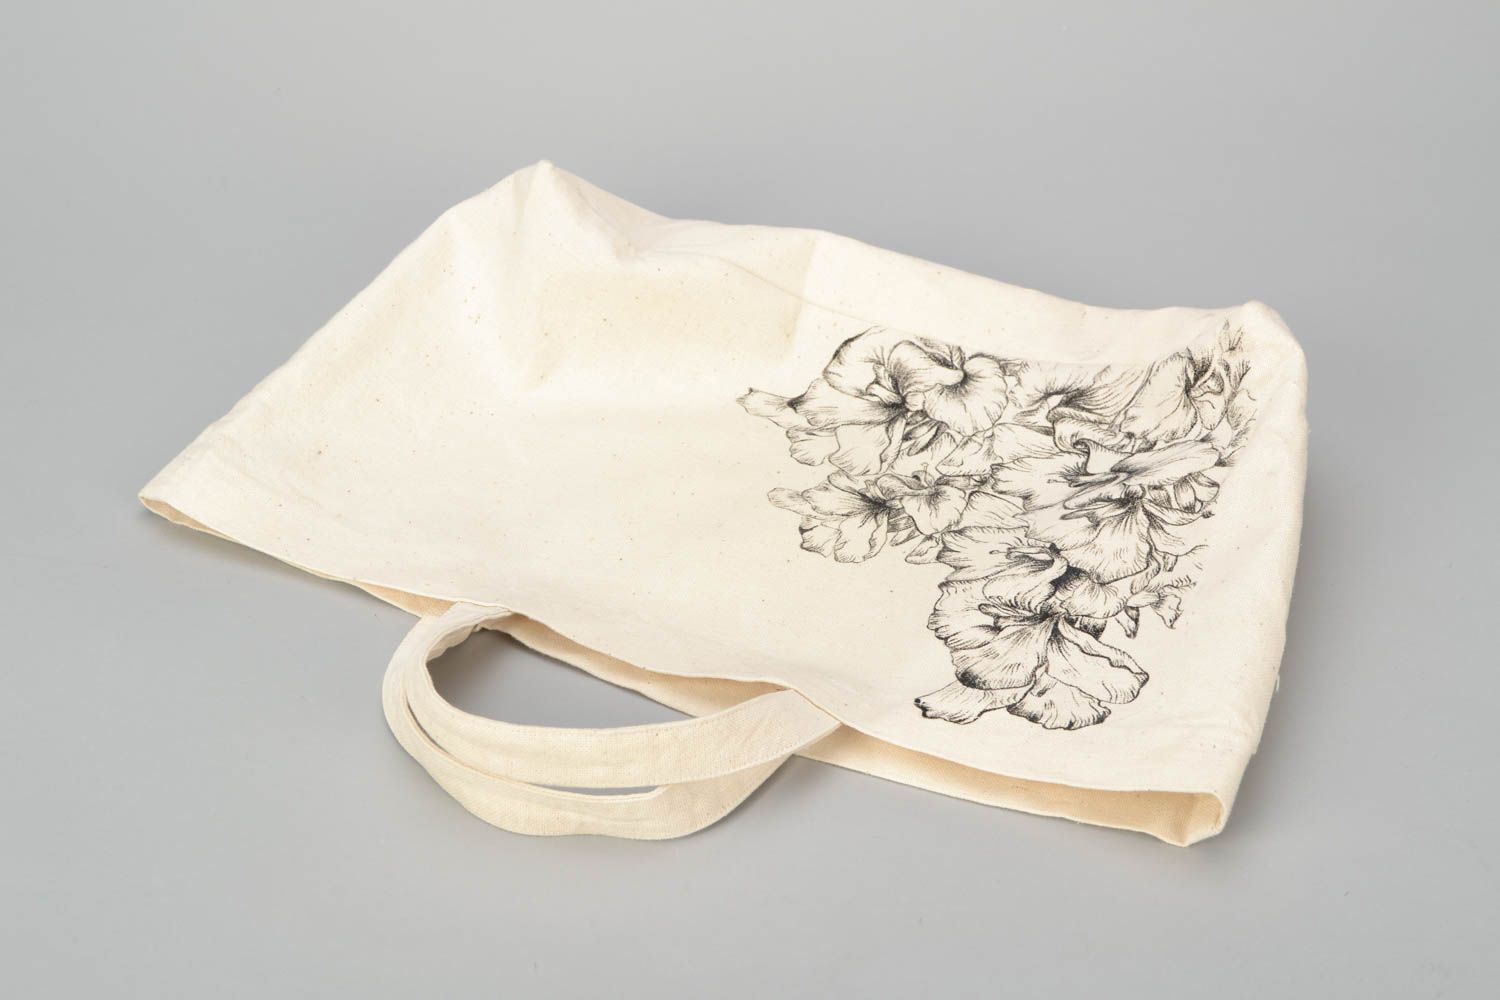 Textil Handtasche in Weiß foto 3